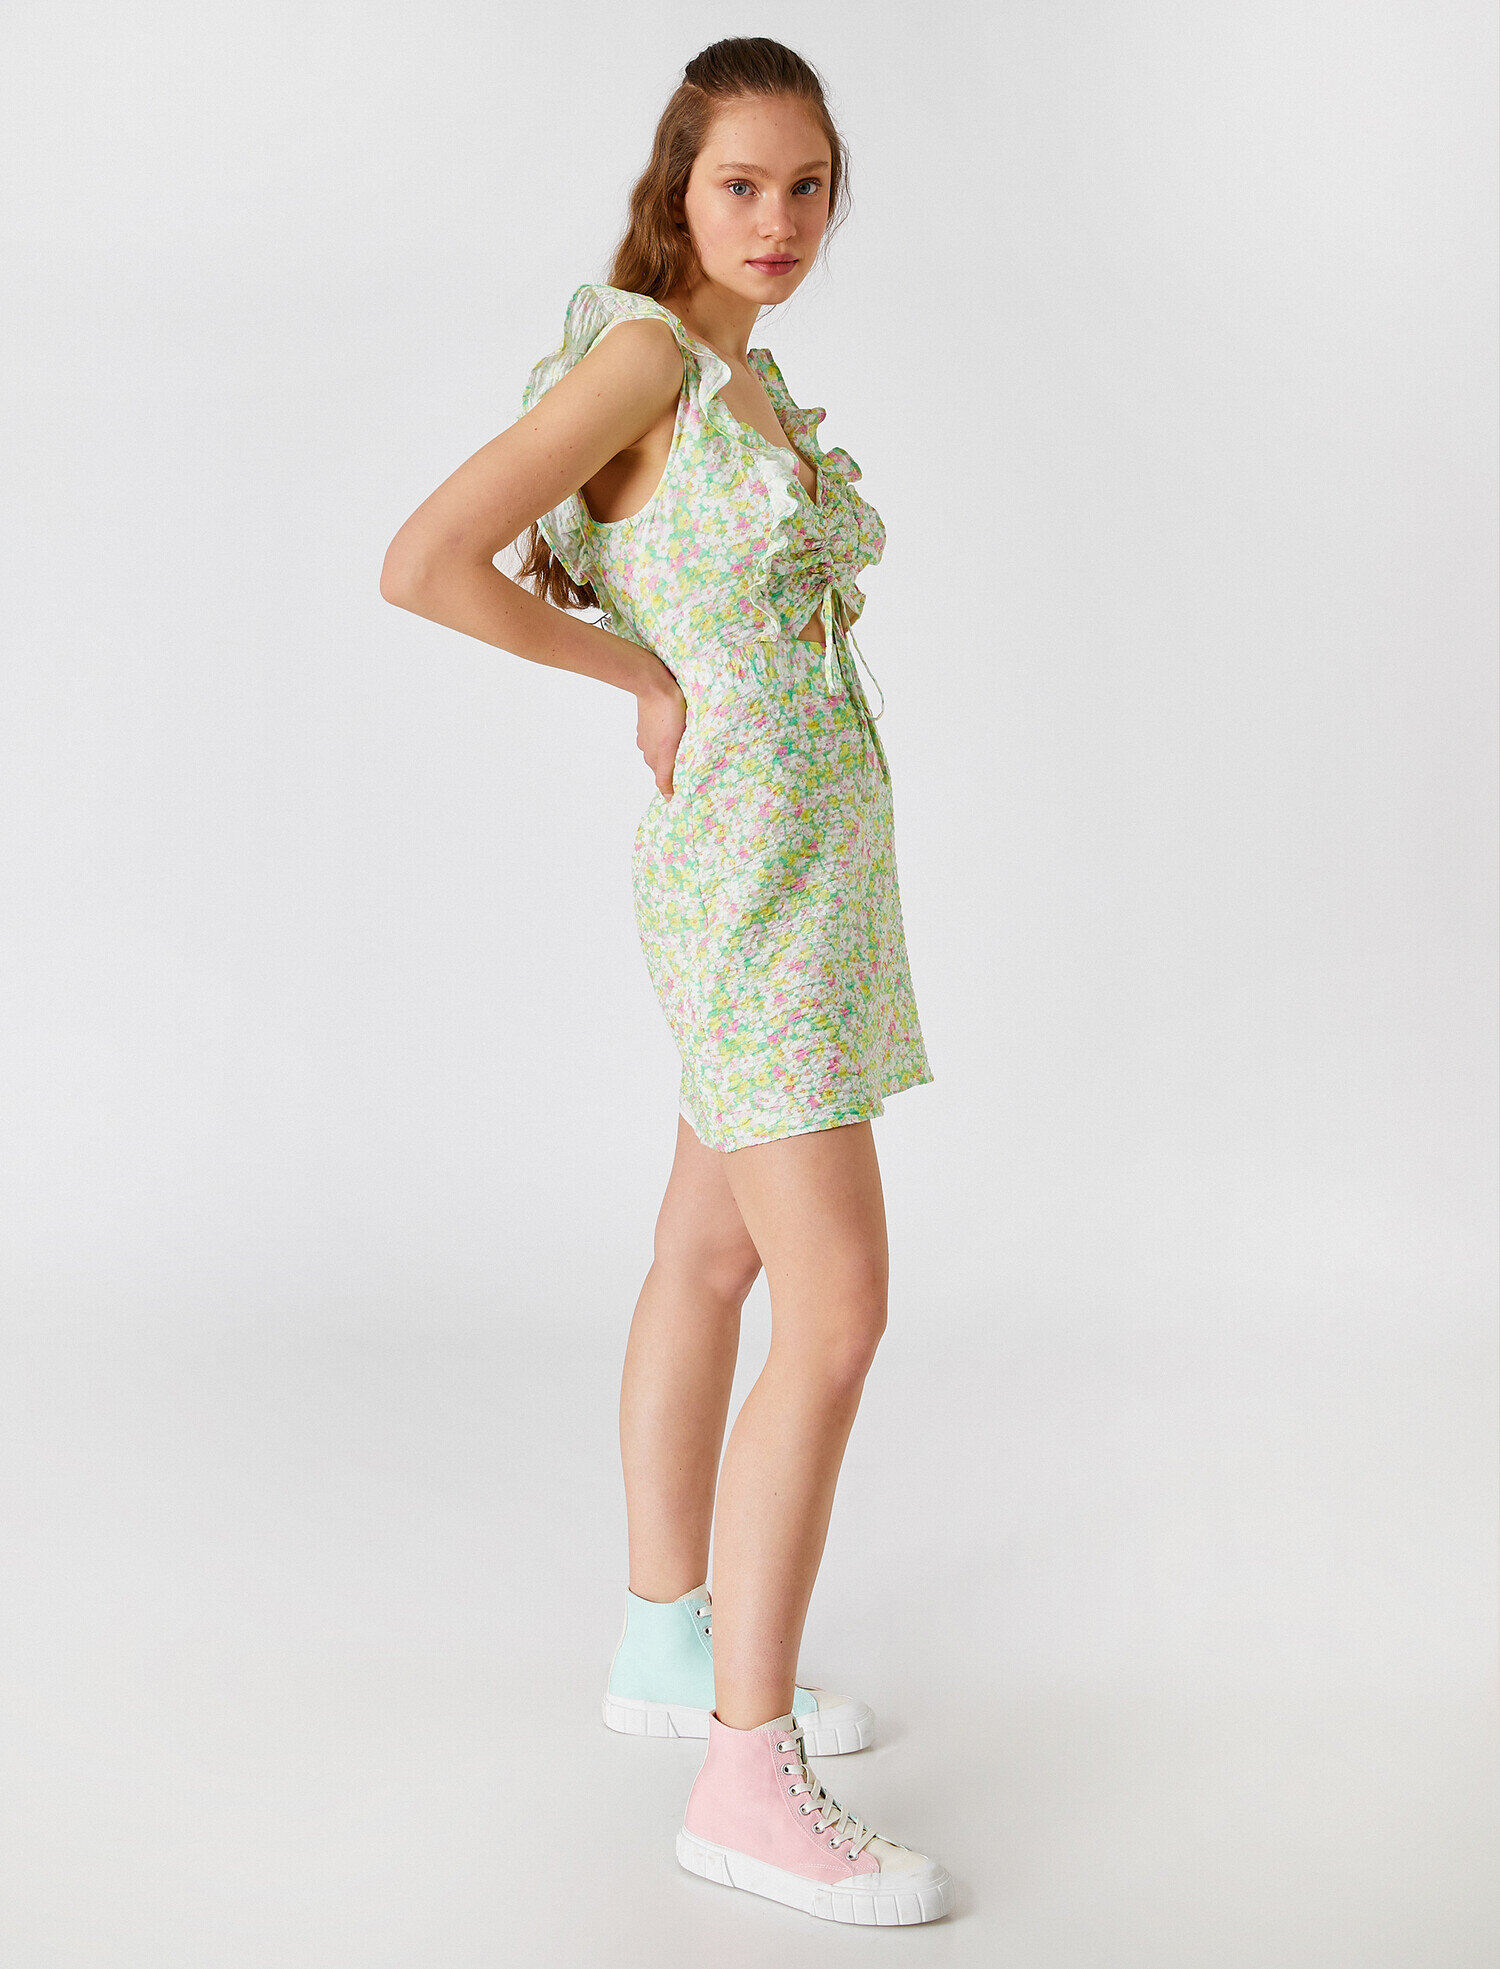 Çiçekli Mini Elbise Kolsuz Fırfırlı Büzgülü